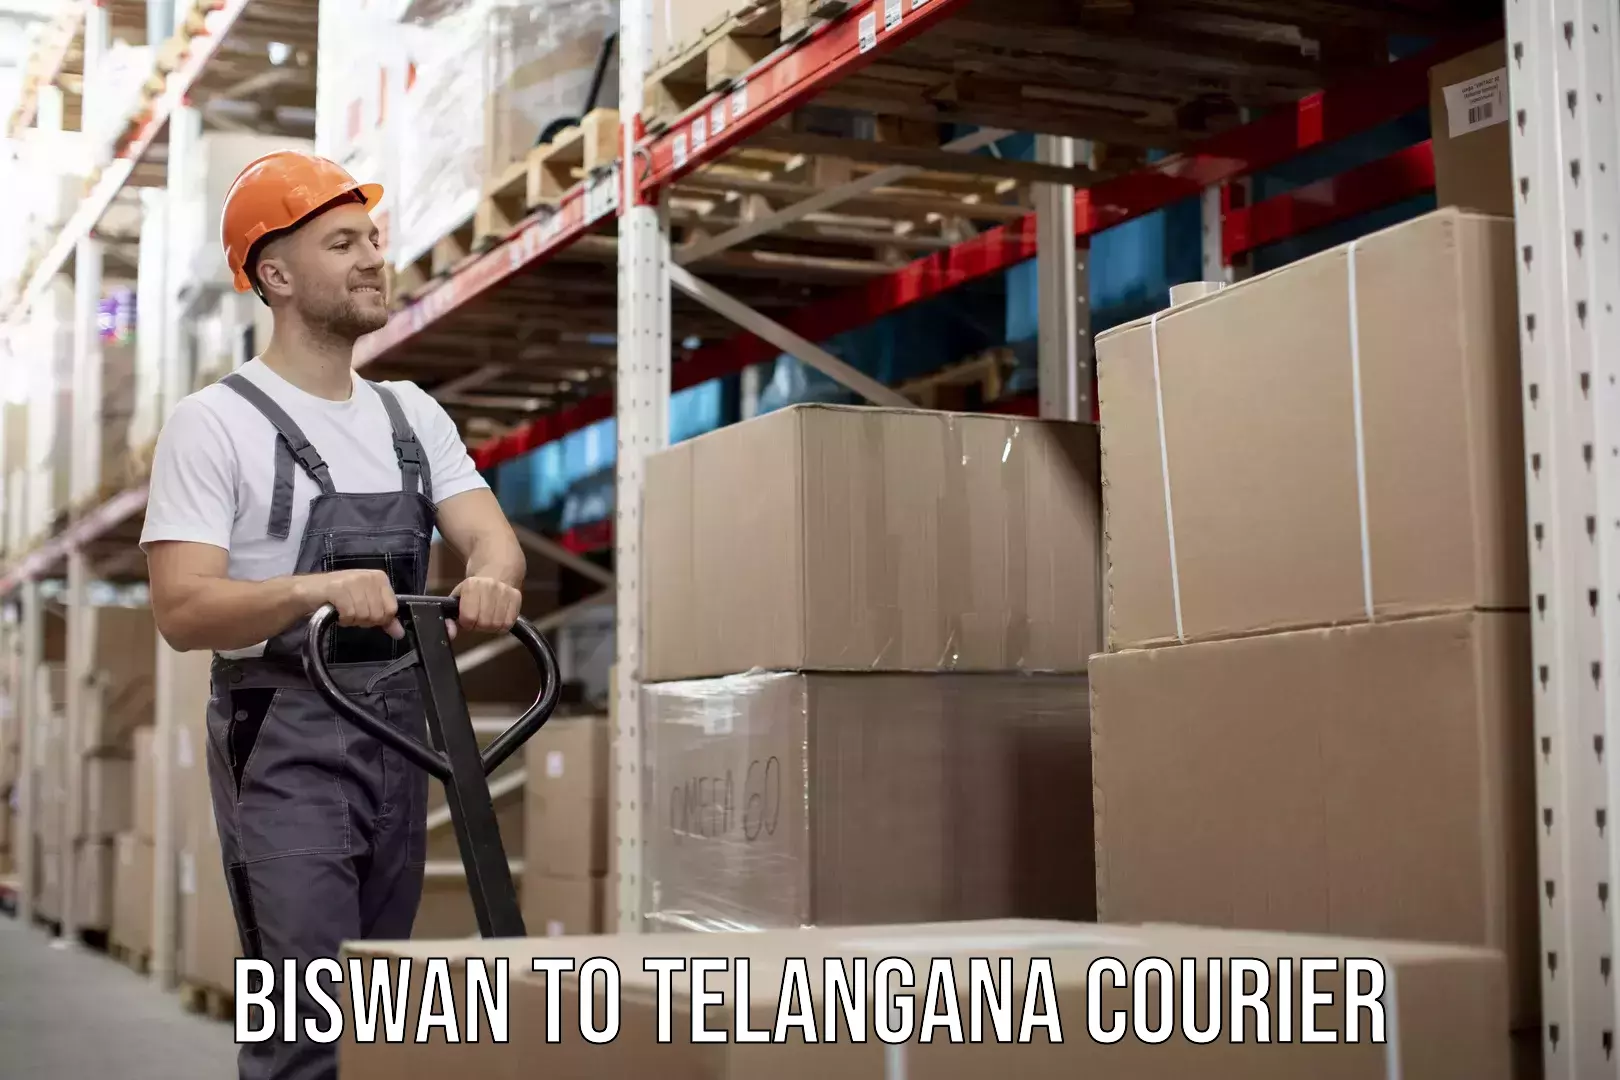 Express postal services Biswan to Telangana